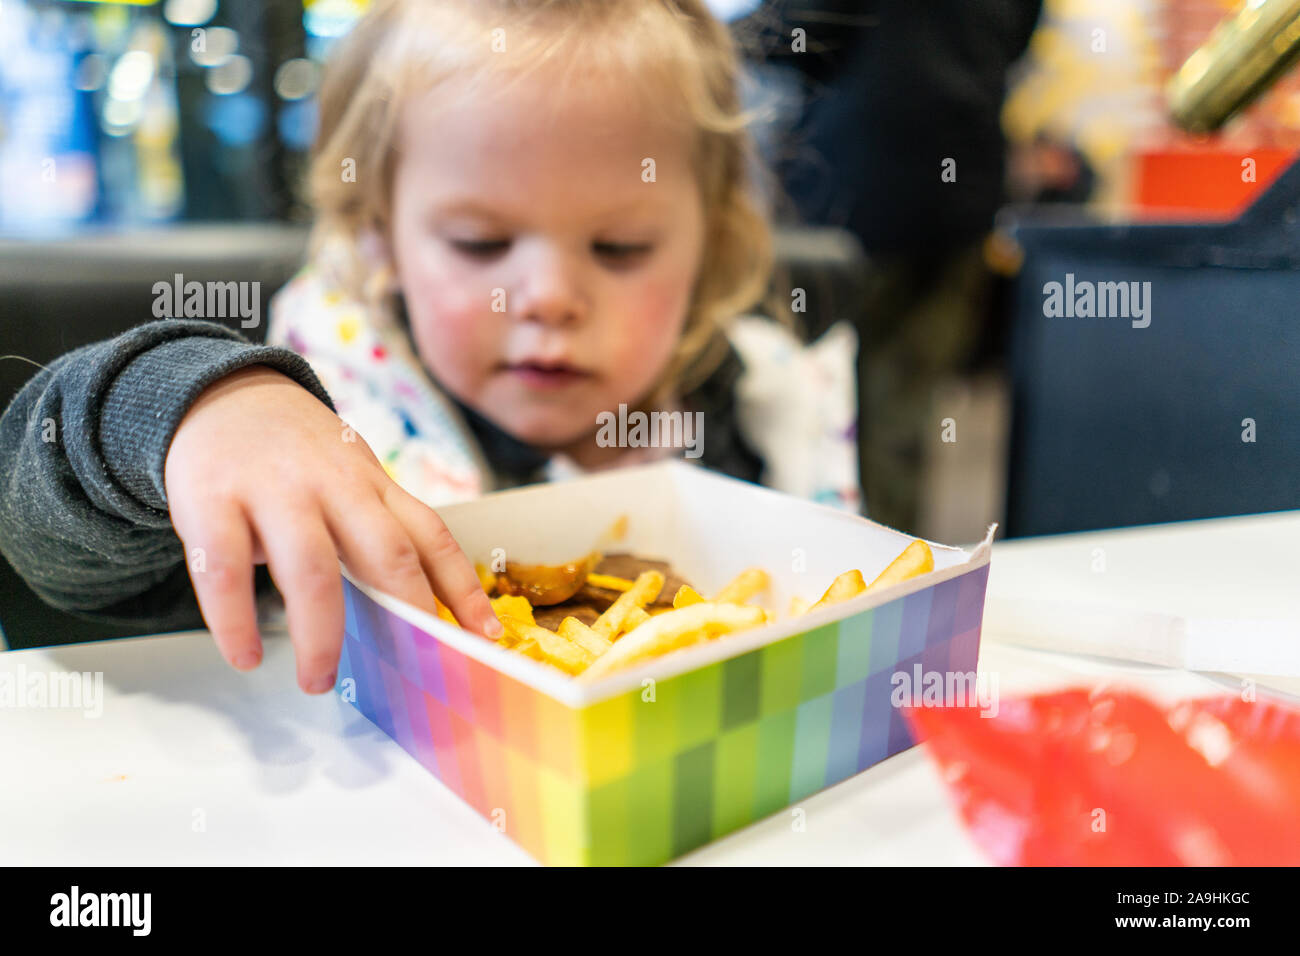 Une jolie petite fille mange son happy meal à partir de la zone prévue,  frites et hamburgers pour un festin qui vient avec un ours en peluche avec  TY-d'yeux Photo Stock -